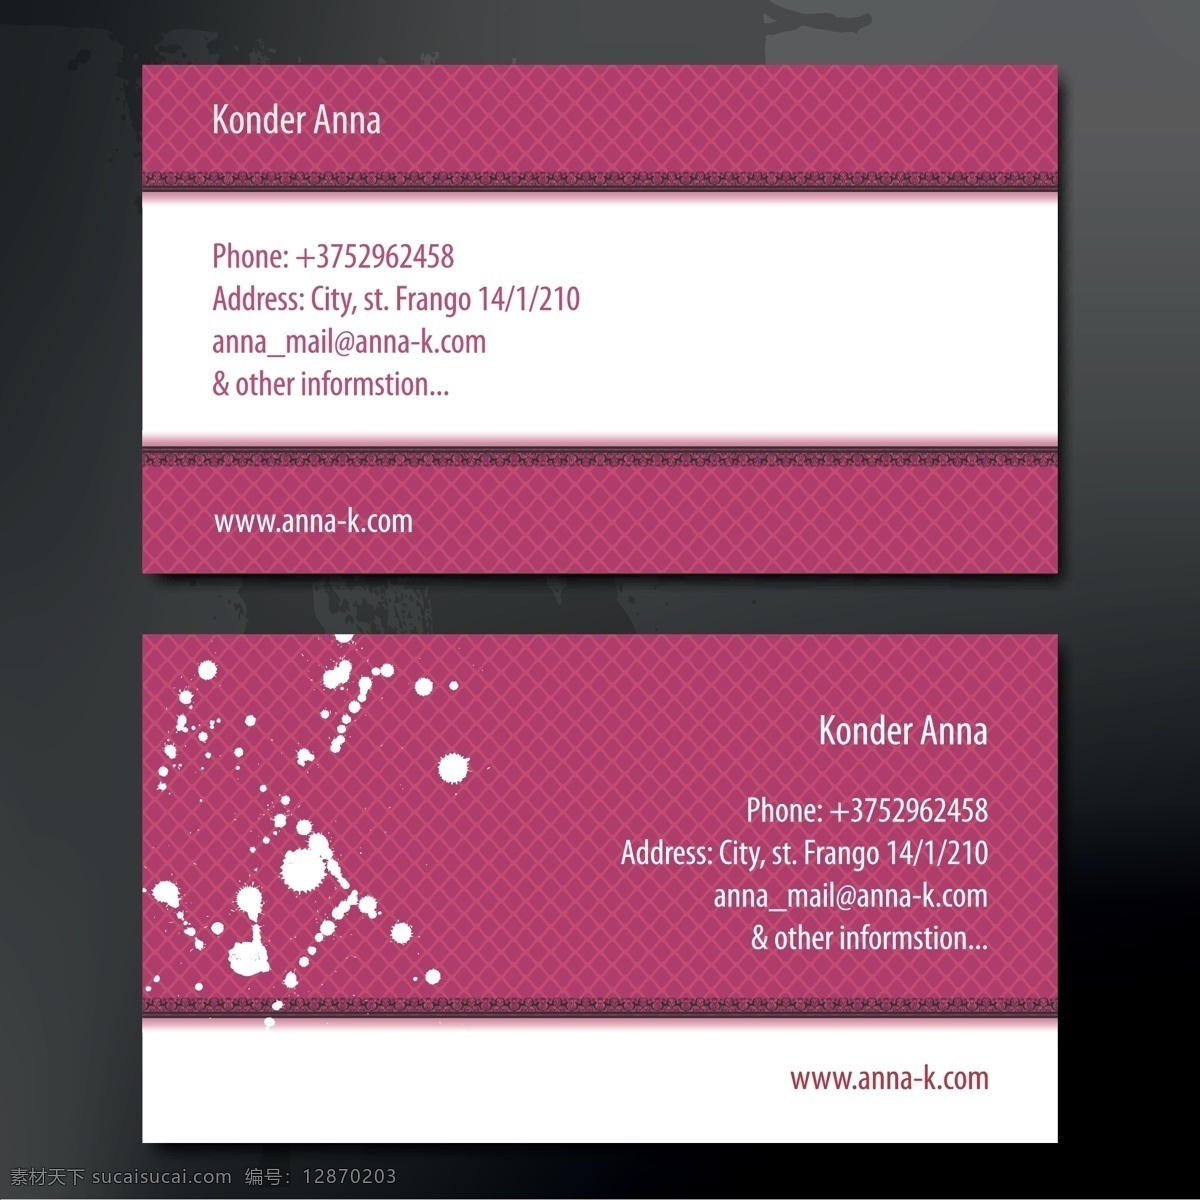 紫色 高贵 冷艳 商务 名片设计 矢量 名片 卡片 矢量素材 设计素材